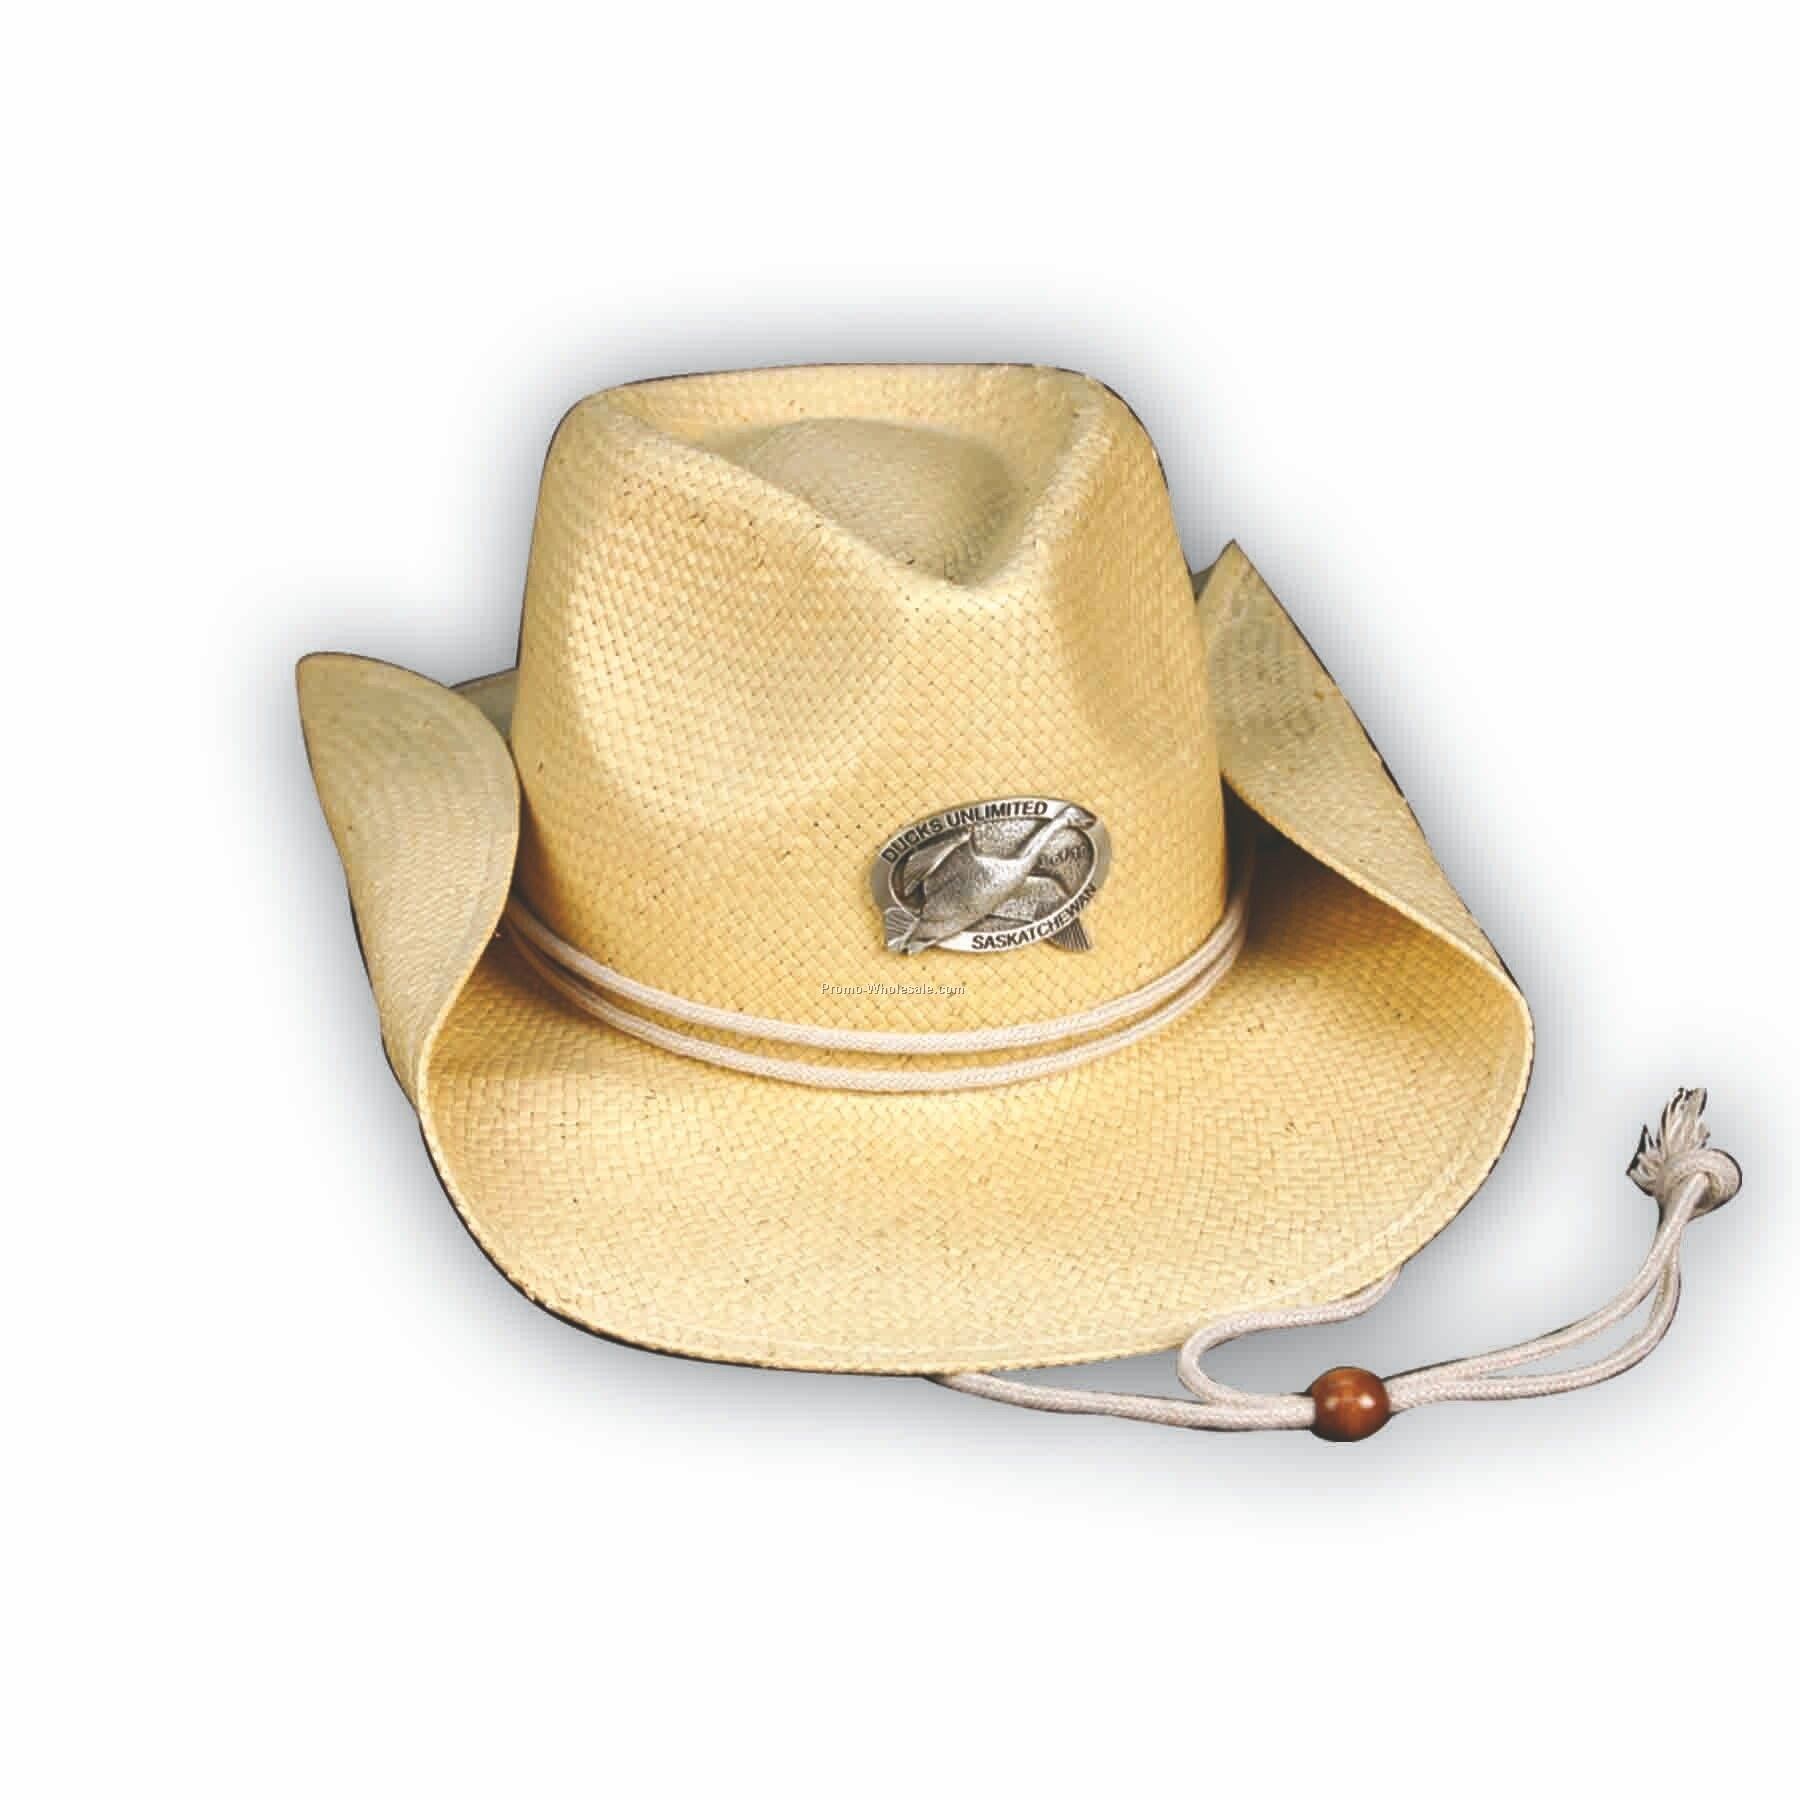 Straw Cowboy Hat W/ Bolo Tie (Pewter Emblem)